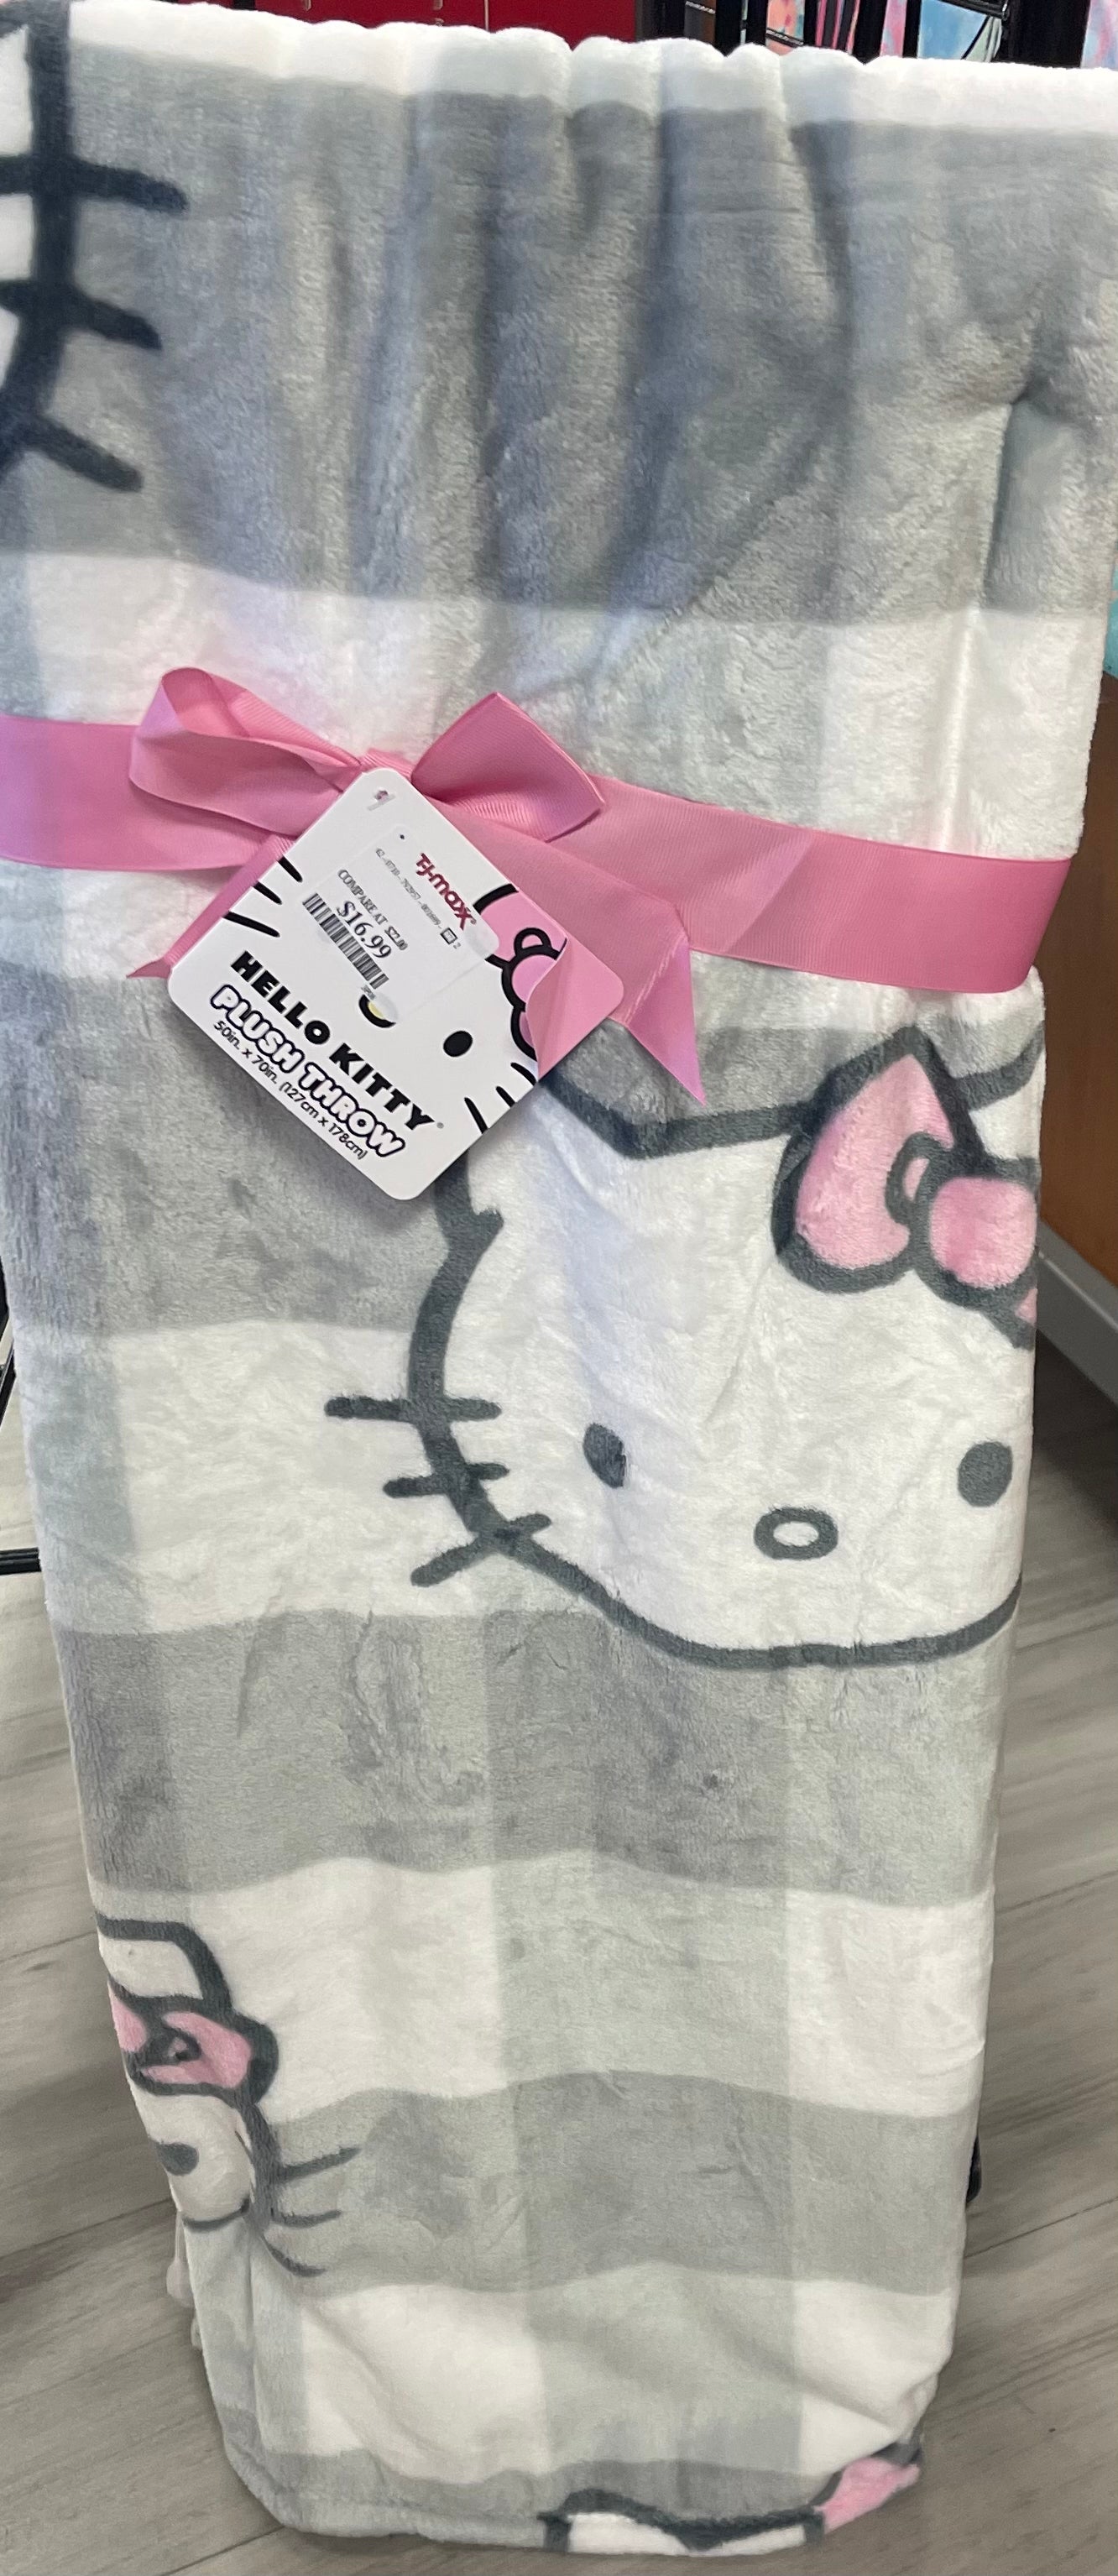 Hello Kitty Throw Blanket (Plaid Print Series)